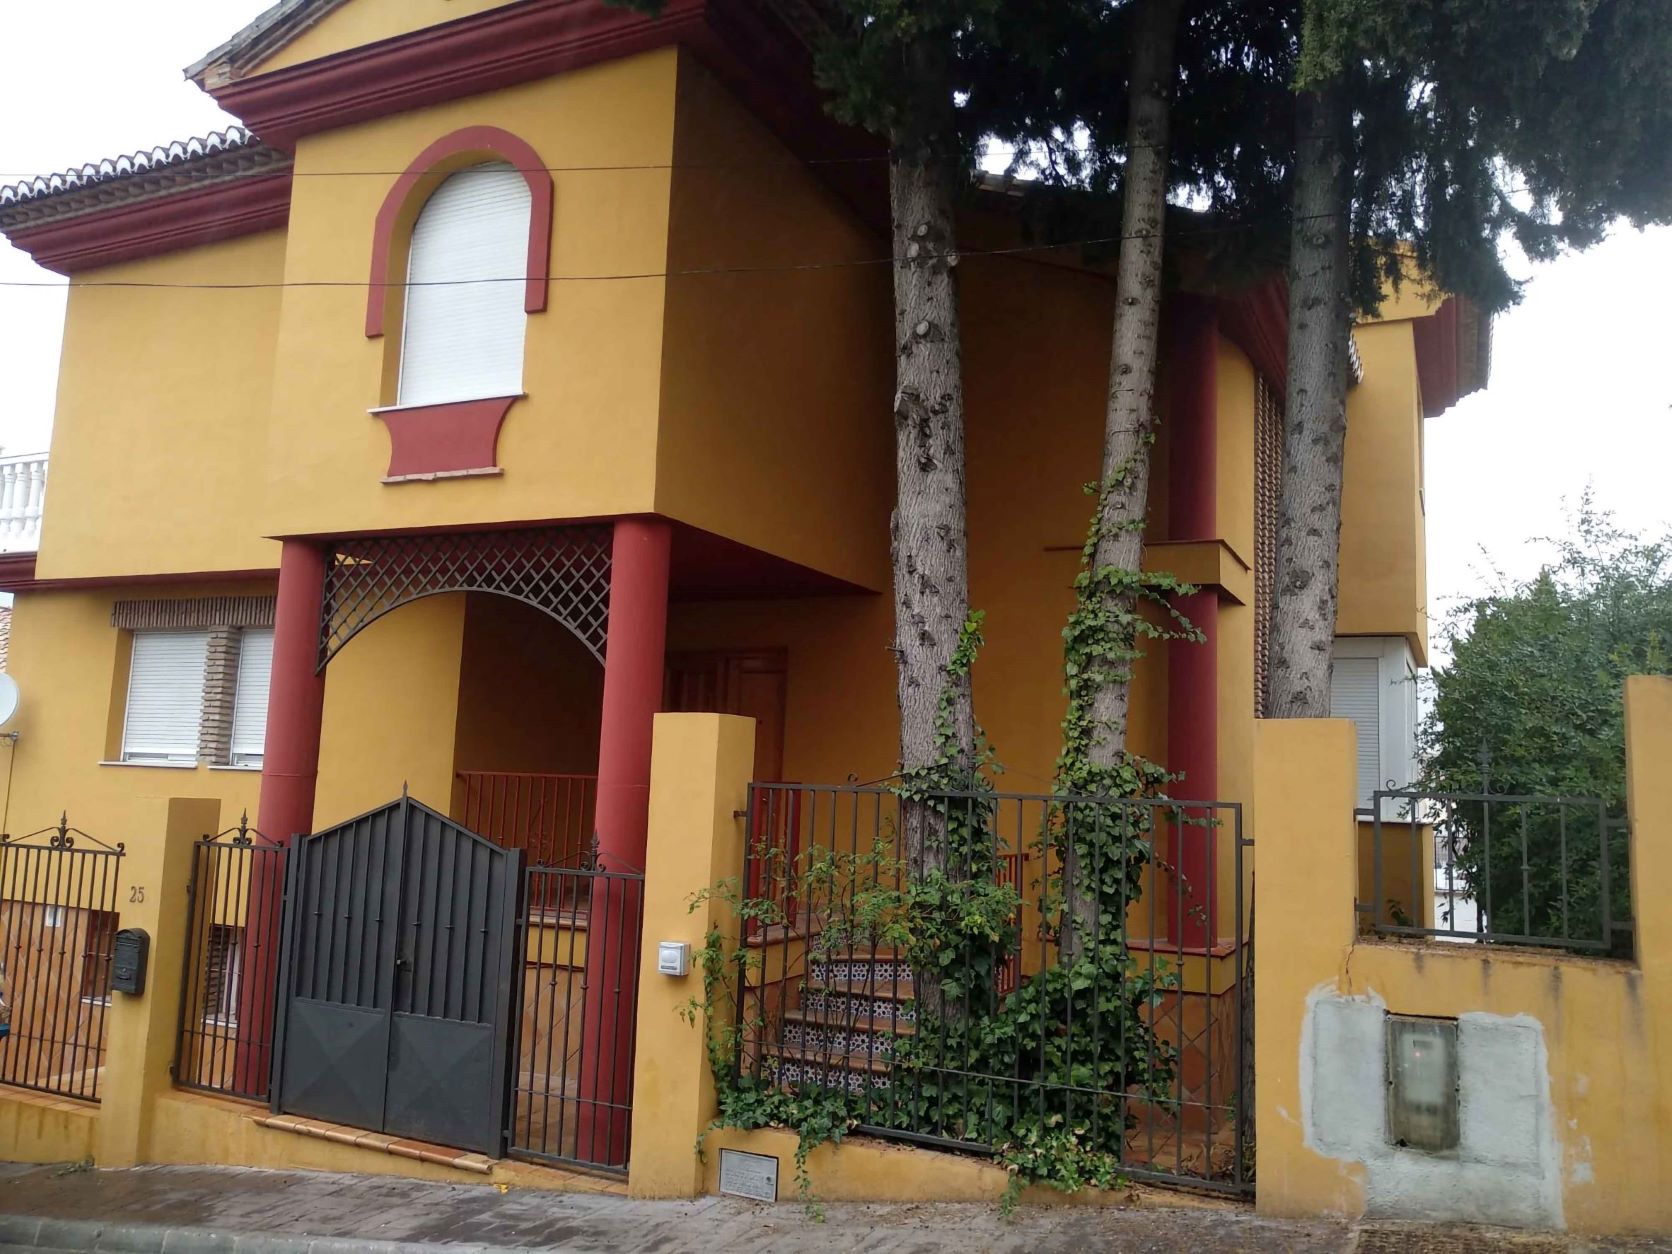 Cajamar y Haya Real Estate ponen a la venta 7.500 inmuebles con descuentos de hasta el 35 %